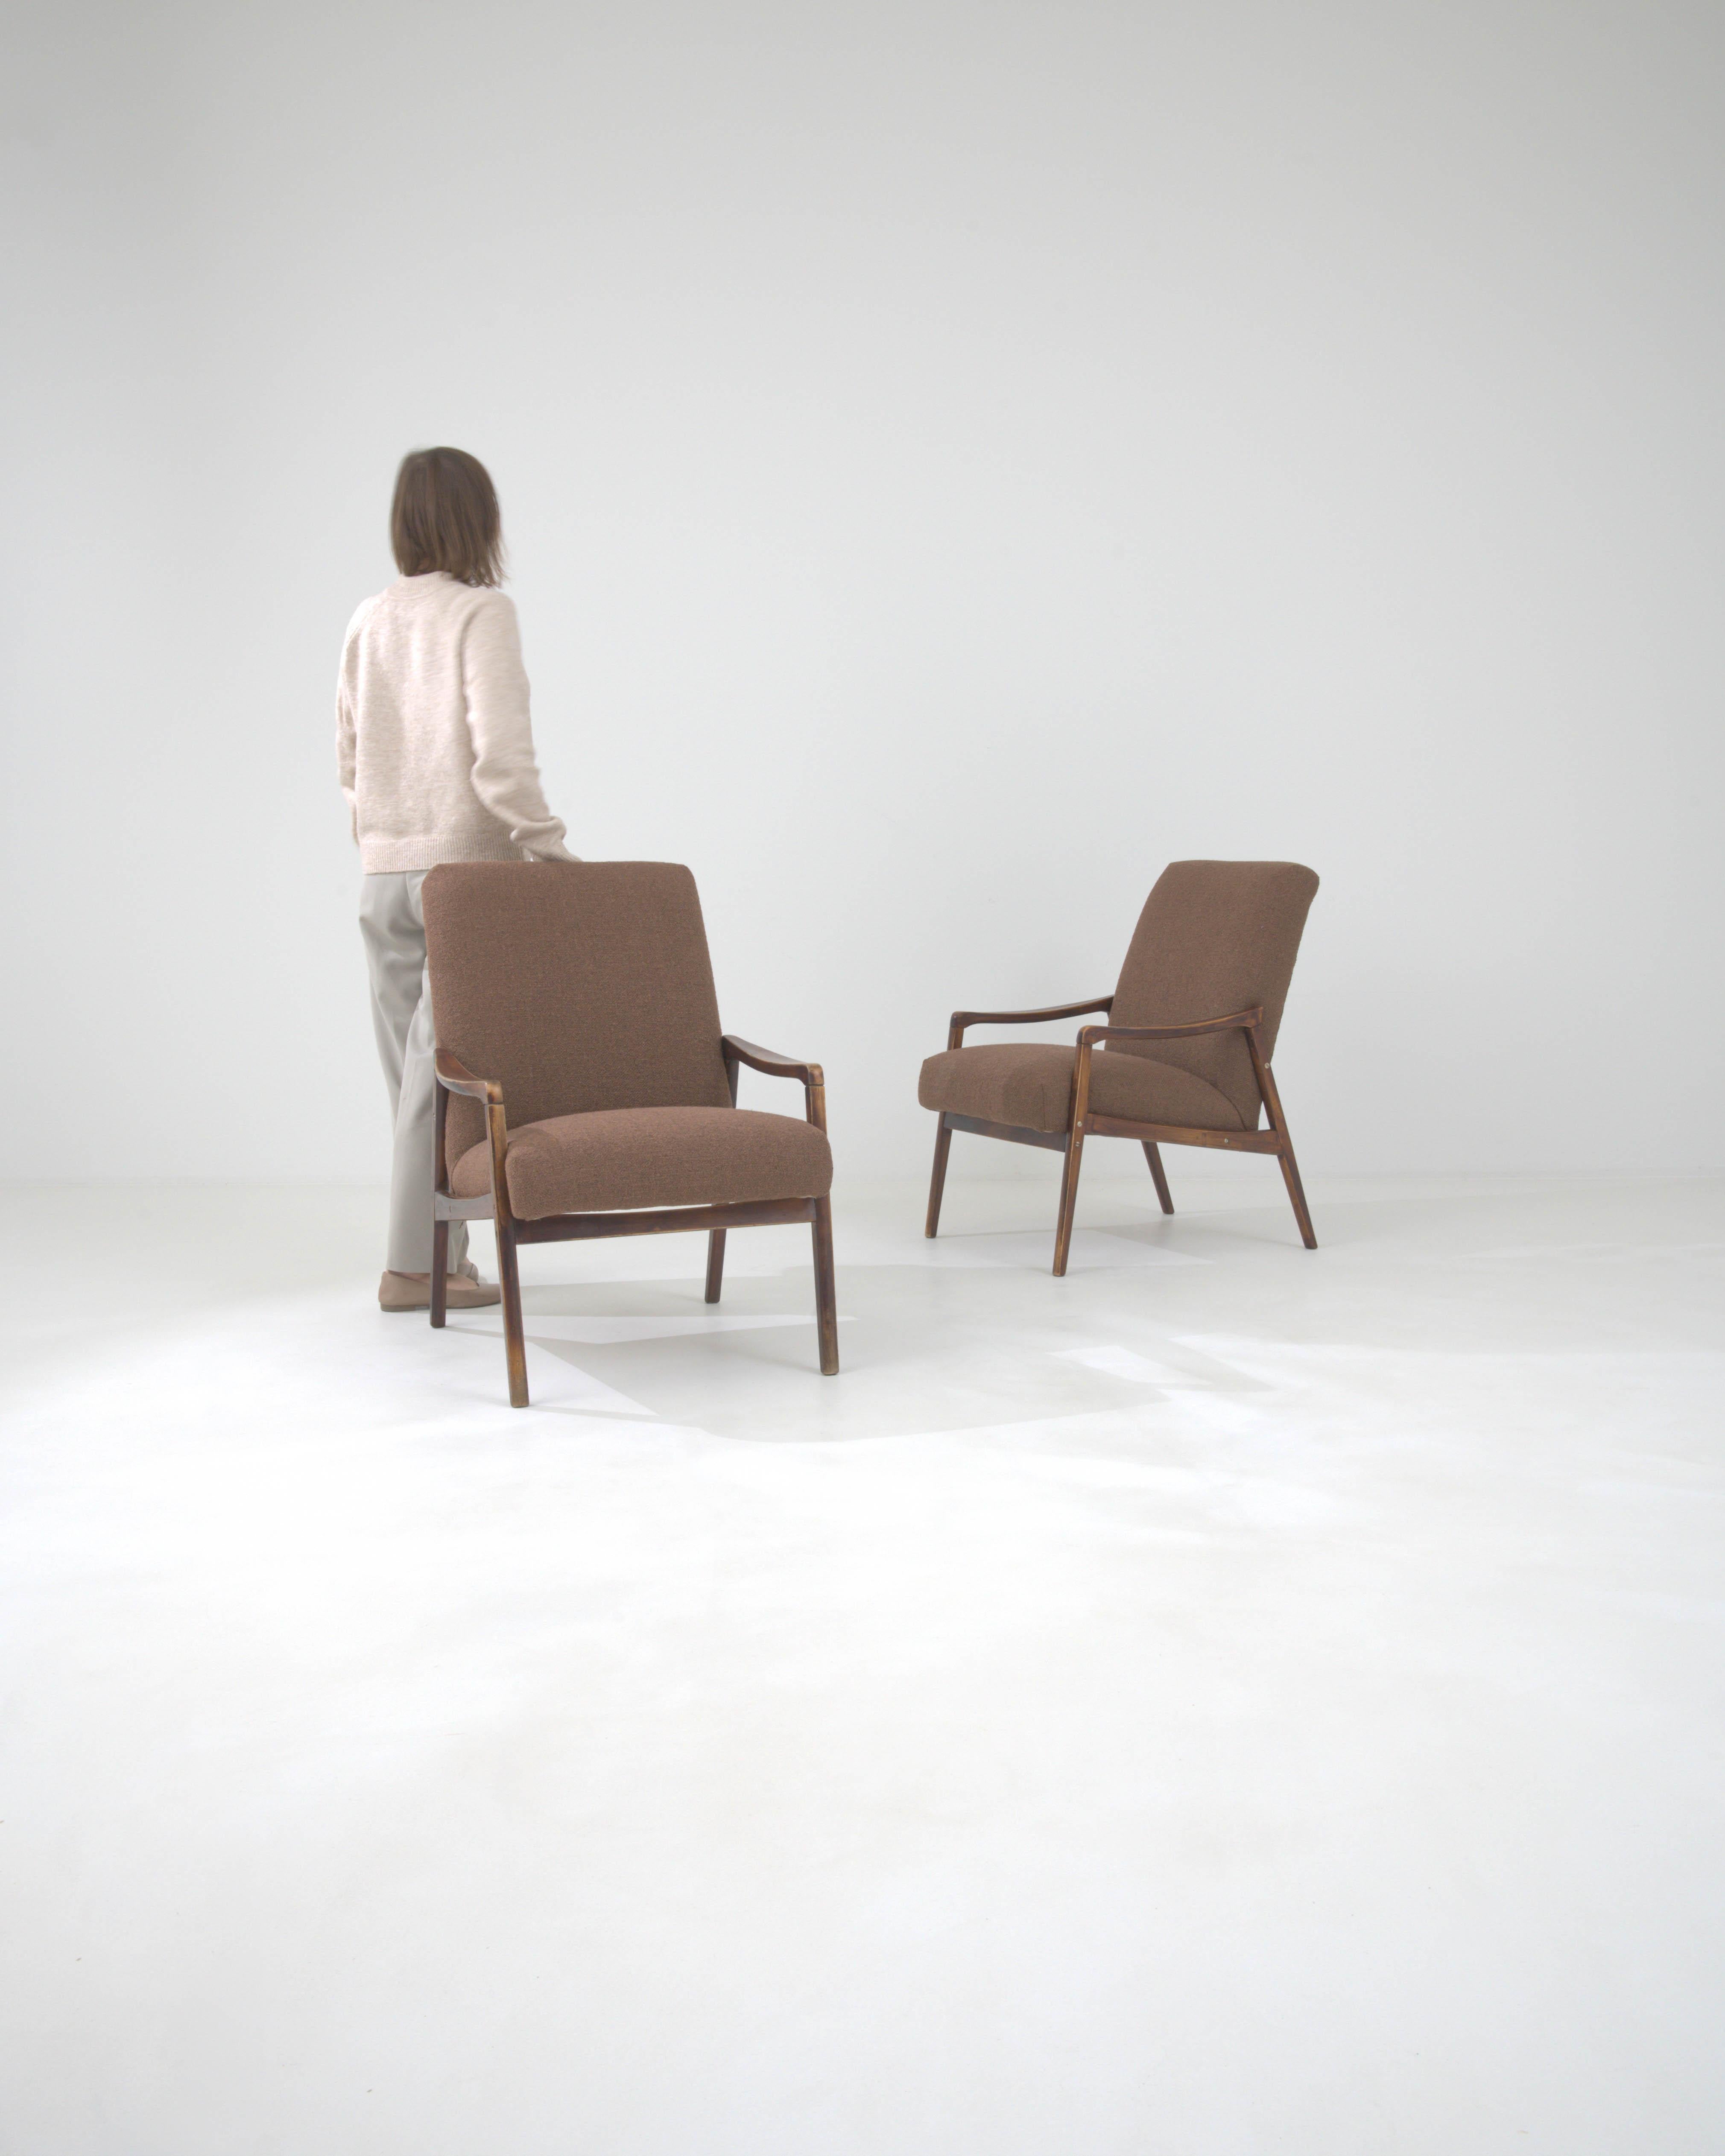 Découvrez la quintessence de la fusion de la forme et de la fonction avec notre paire de fauteuils tapissés Czechia des années 1960. Ces pièces emblématiques illustrent l'élégance minimaliste de l'époque, avec des lignes épurées et un cadre en bois